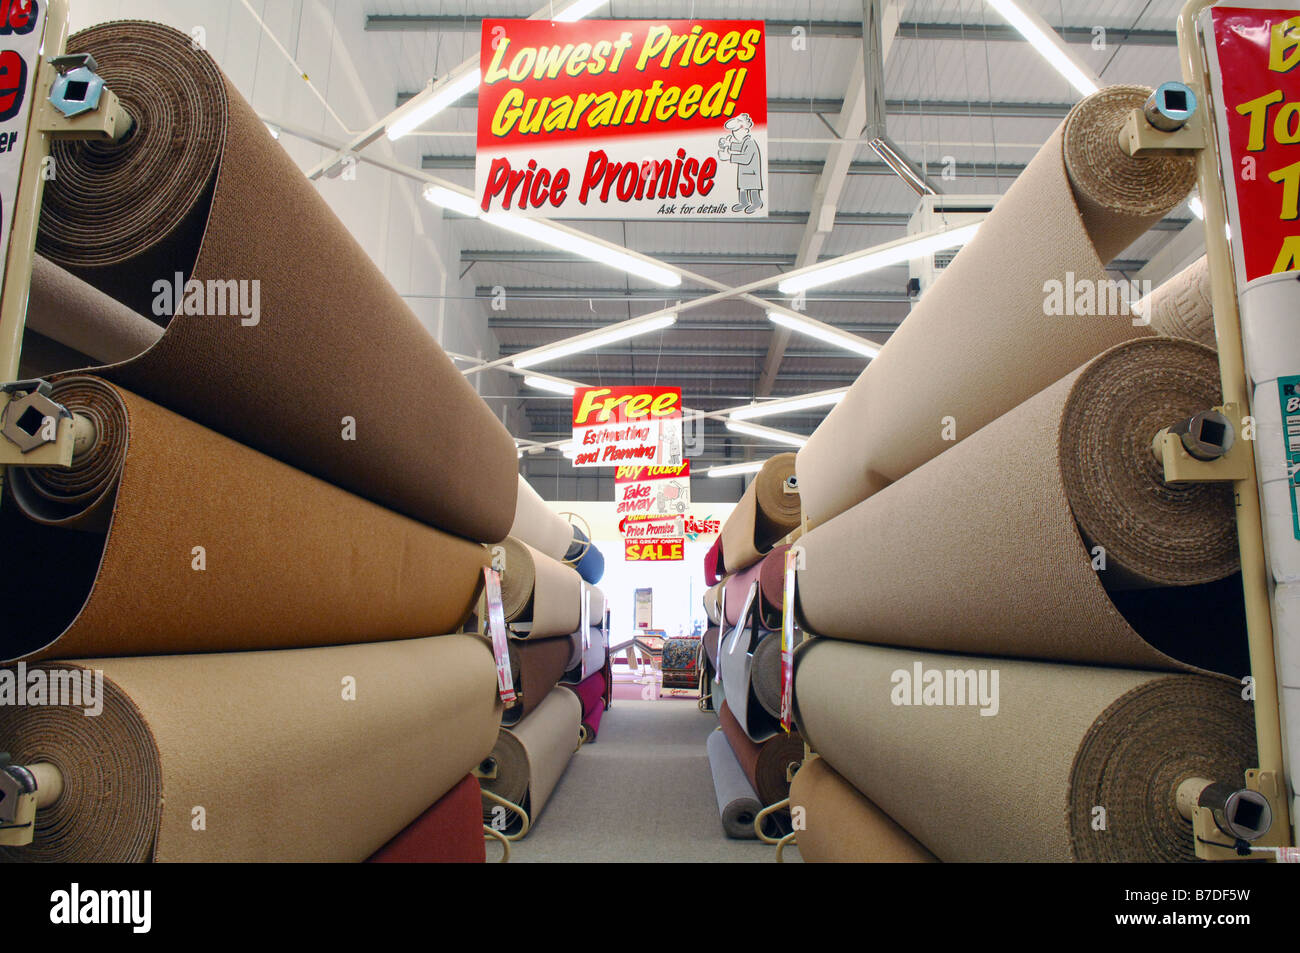 Grandes rollos de alfombra para venta en moqueta con un precio más bajo garantizado signo aparece desde el techo Fotografía de stock -